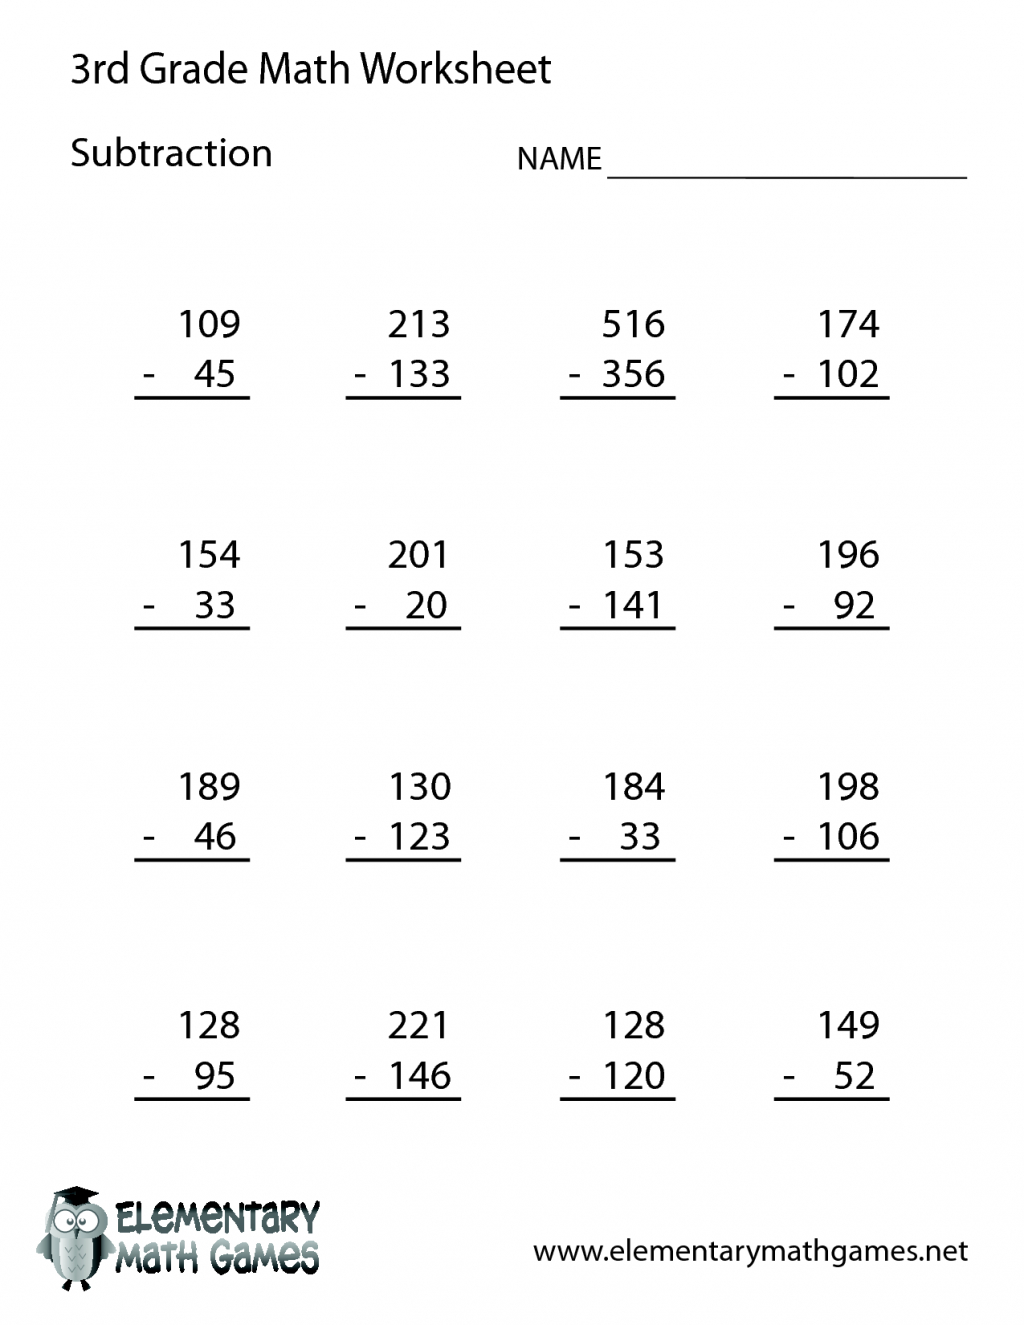 multiplication-worksheets-k12-printable-multiplication-flash-cards